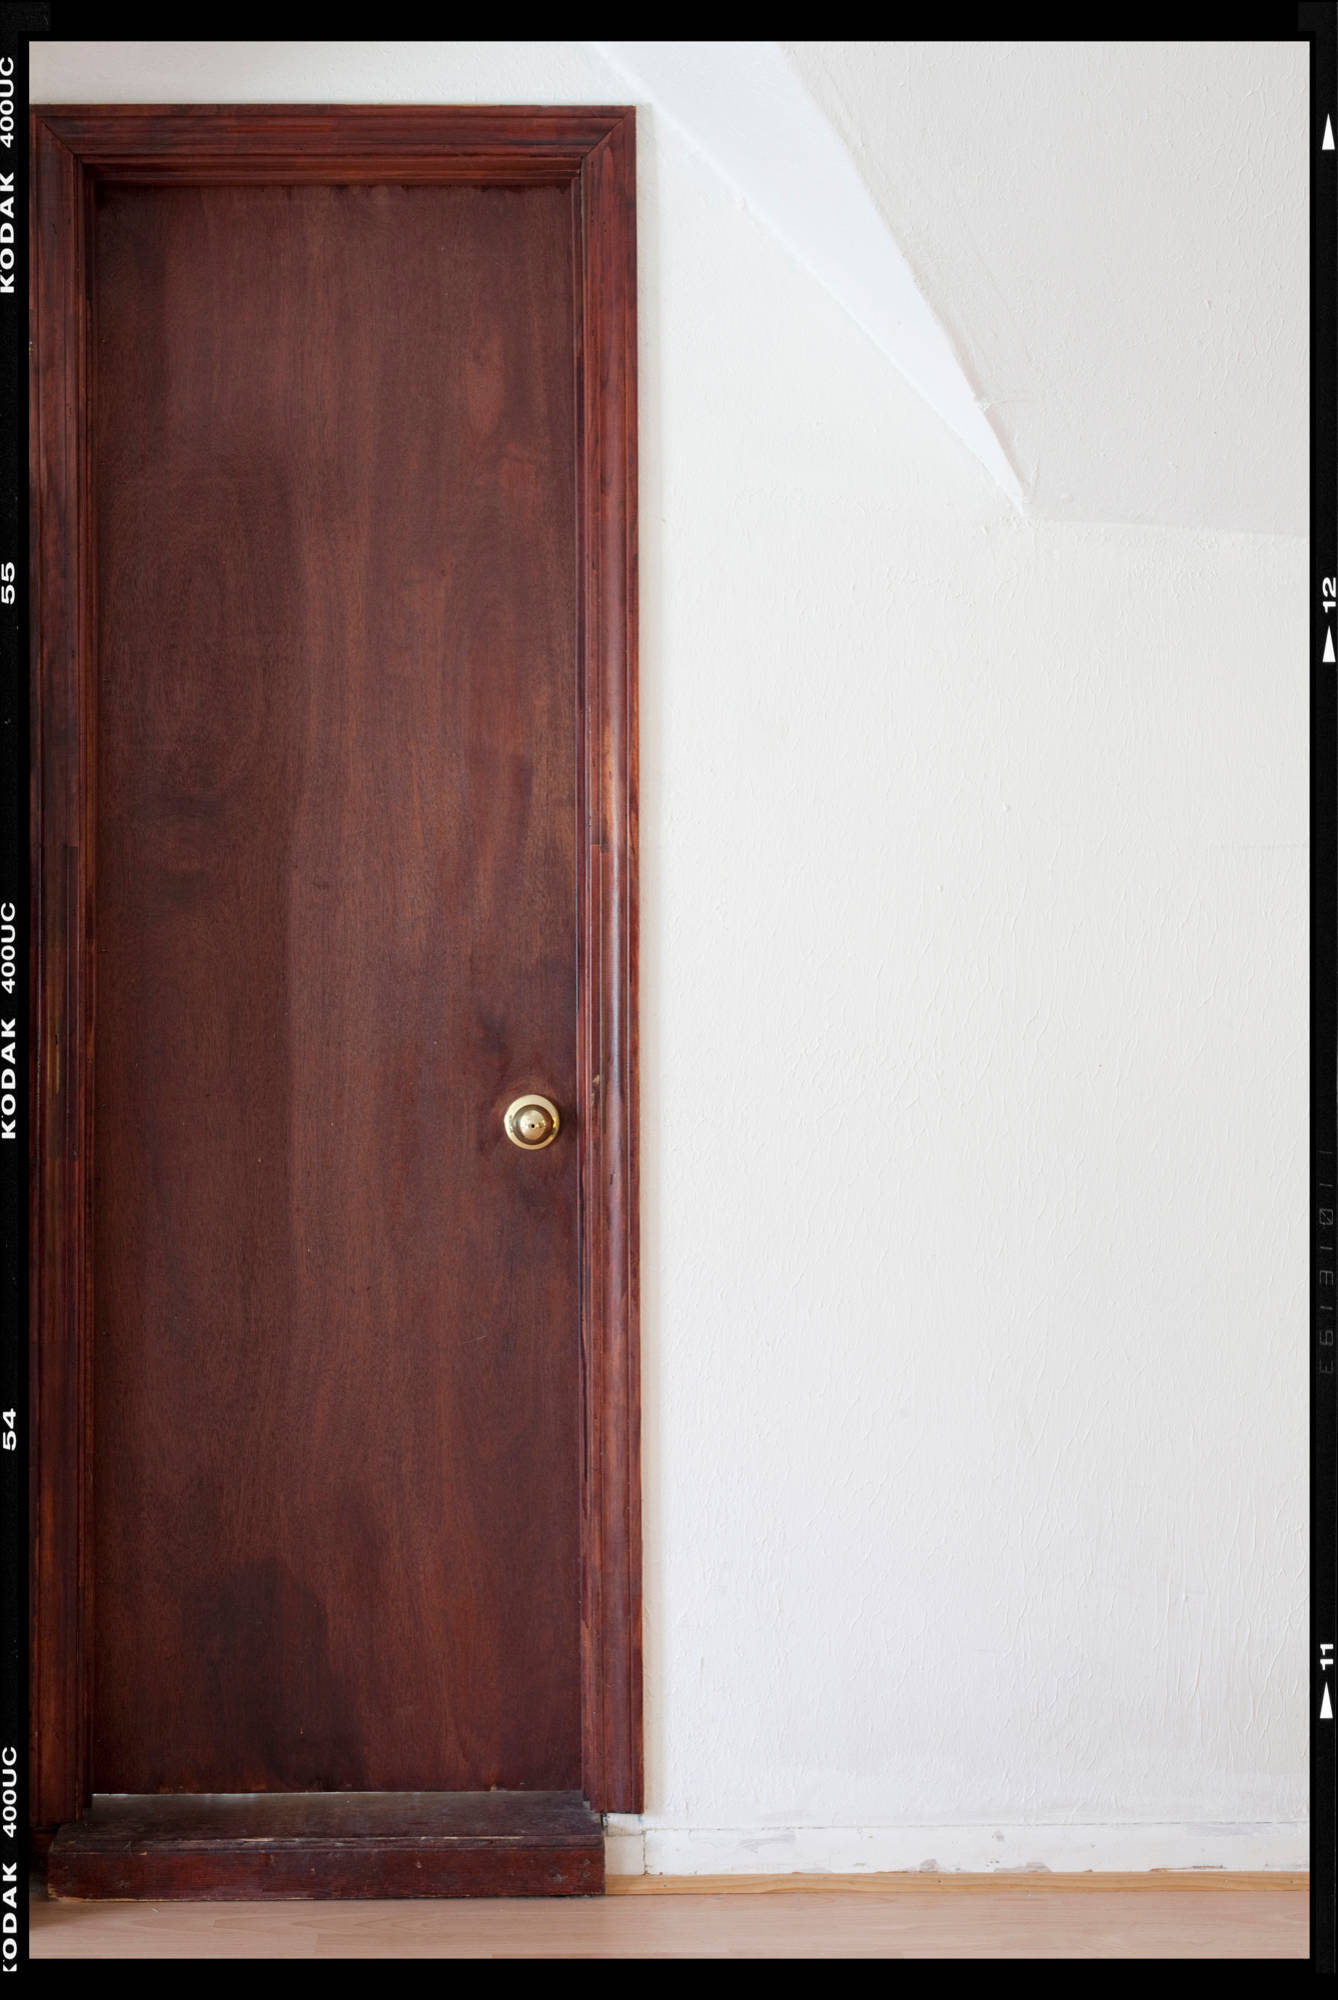 Как покрасить межкомнатные двери самостоятельно: советы профессионалов